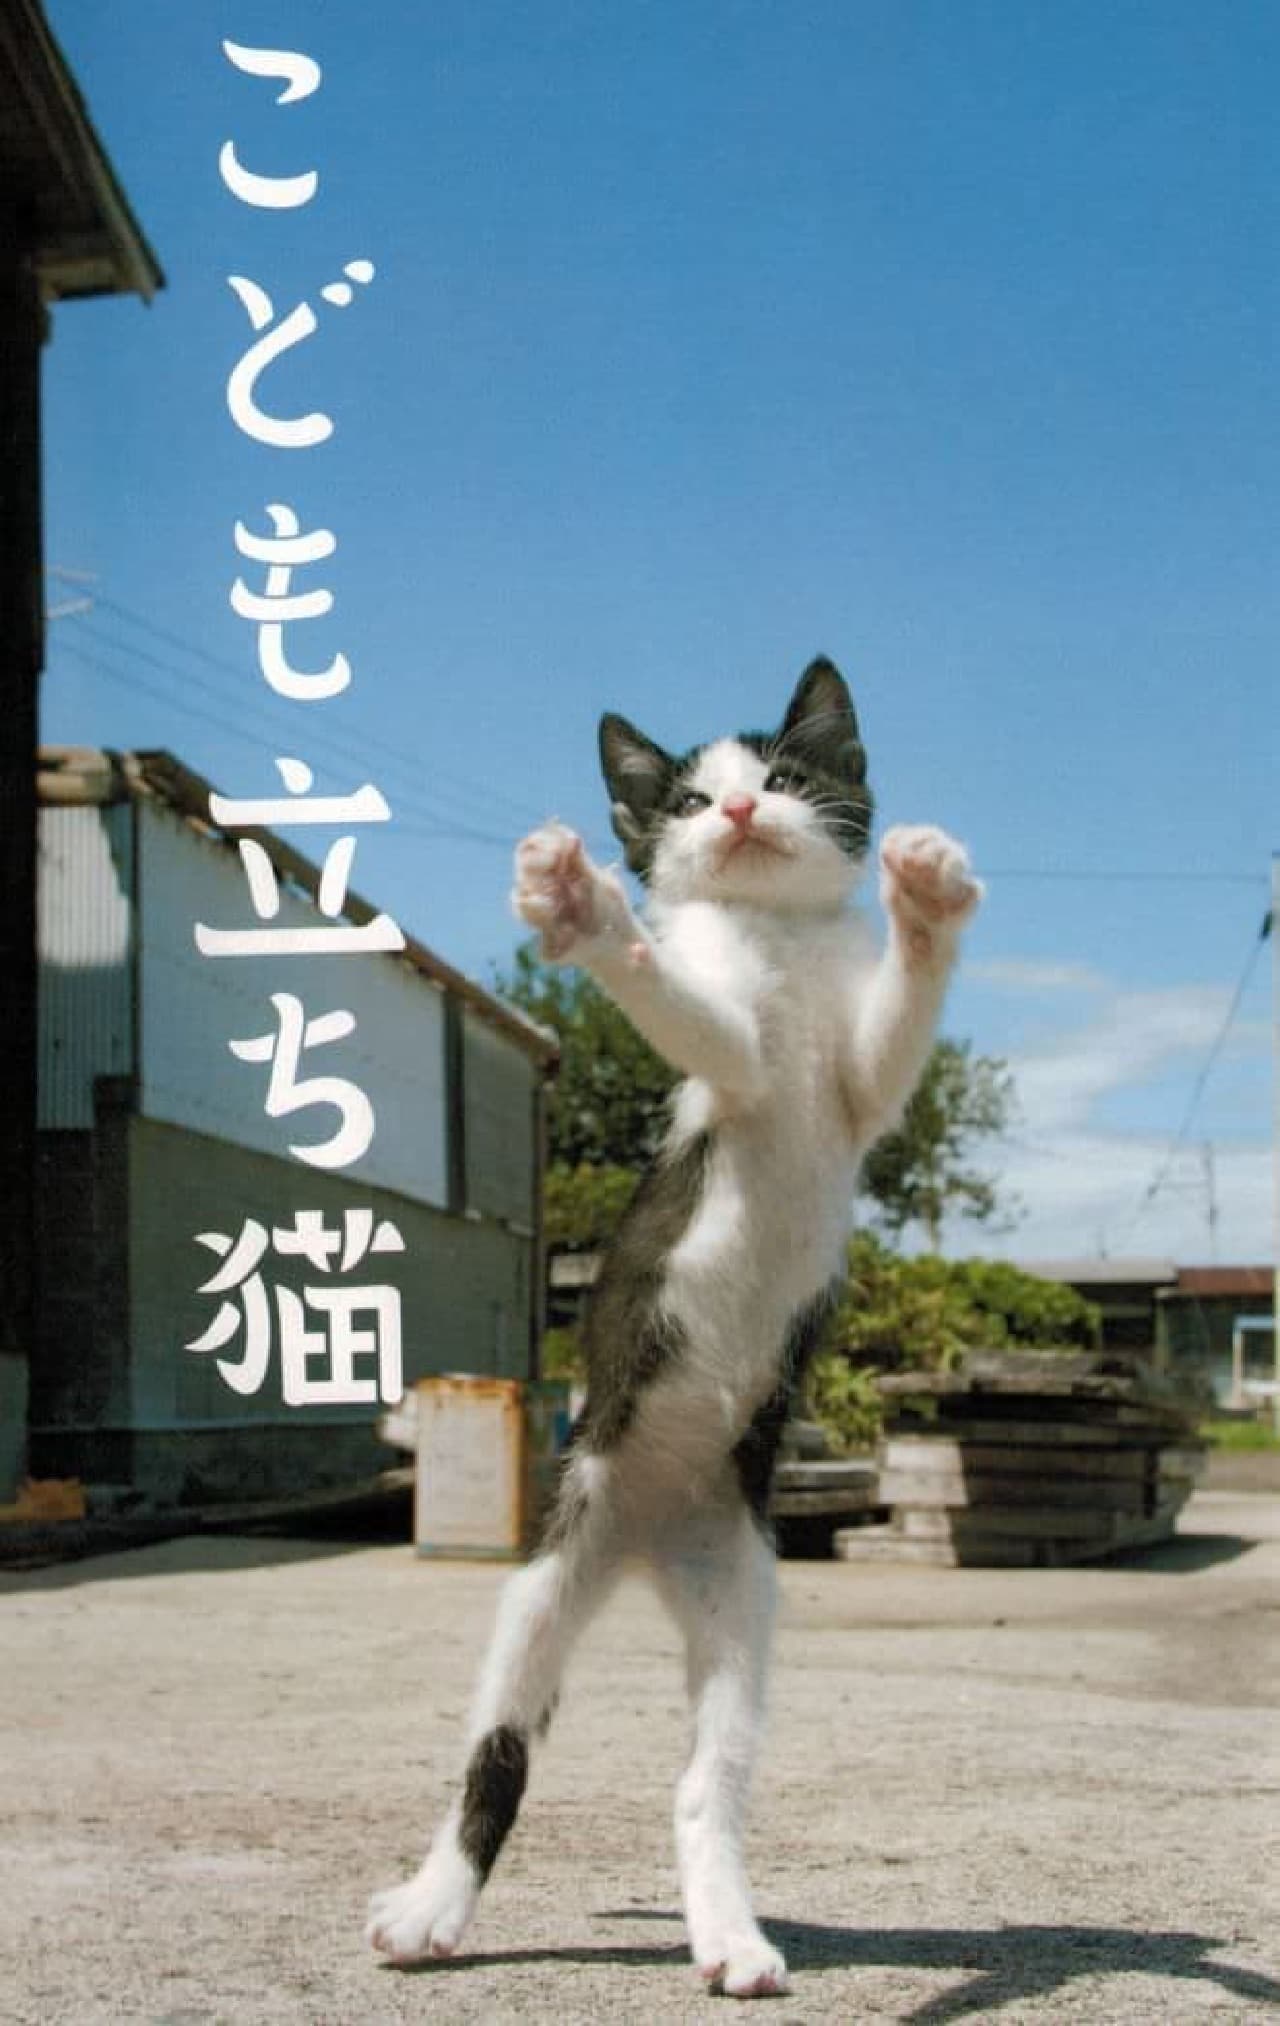 ネコ写真家山本正義さんによる写真集『立ち猫』